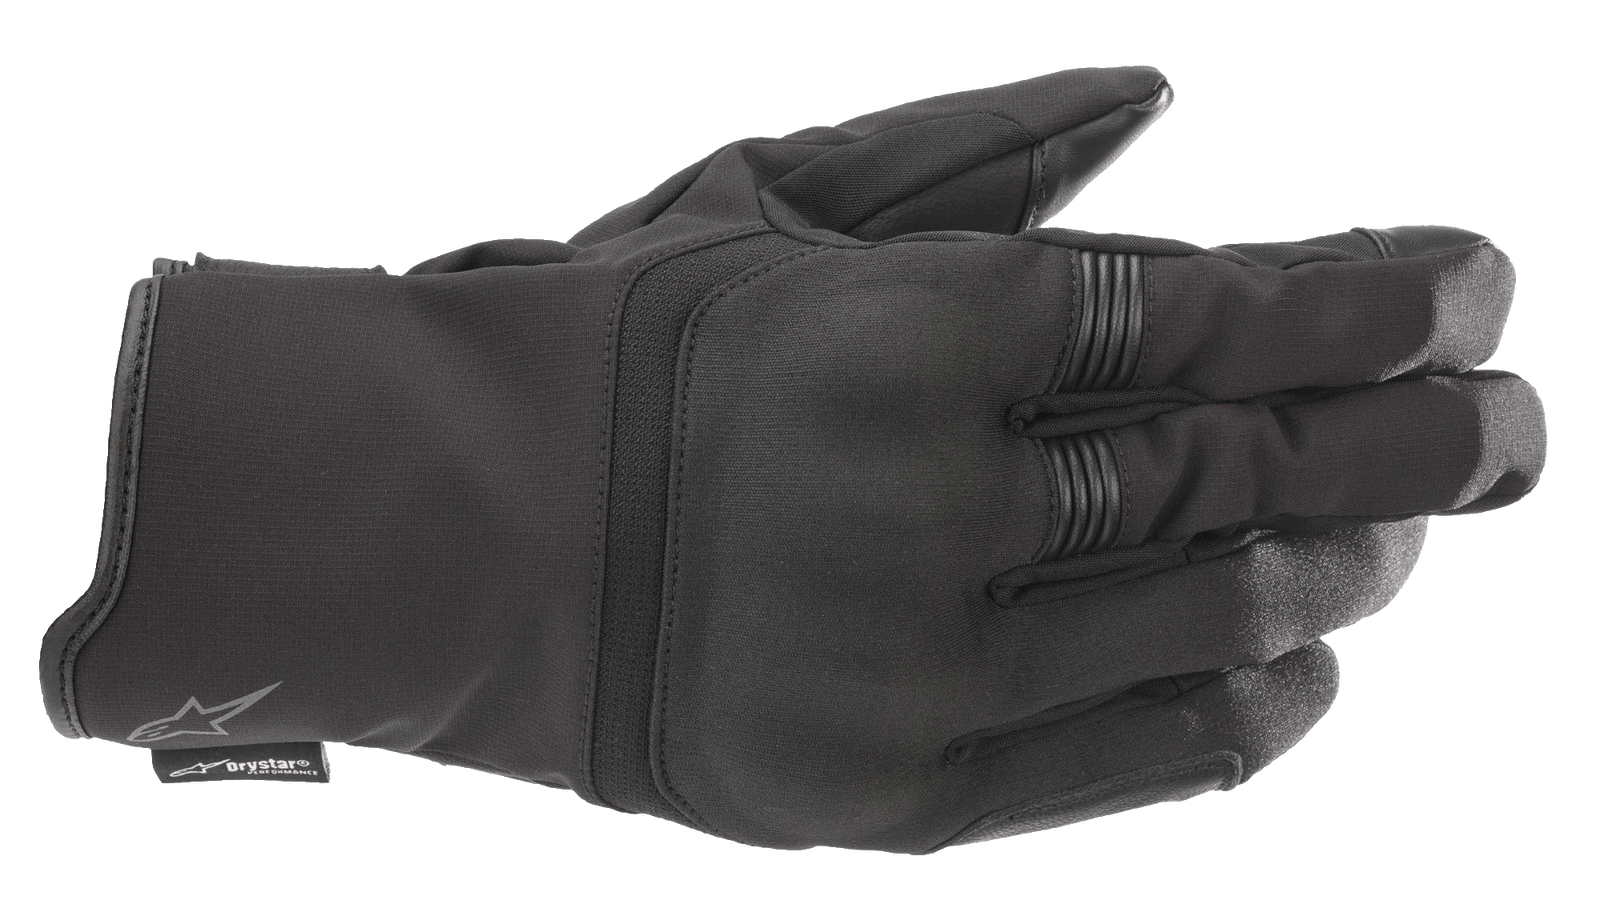 Syncro V2 Drystar® Gloves